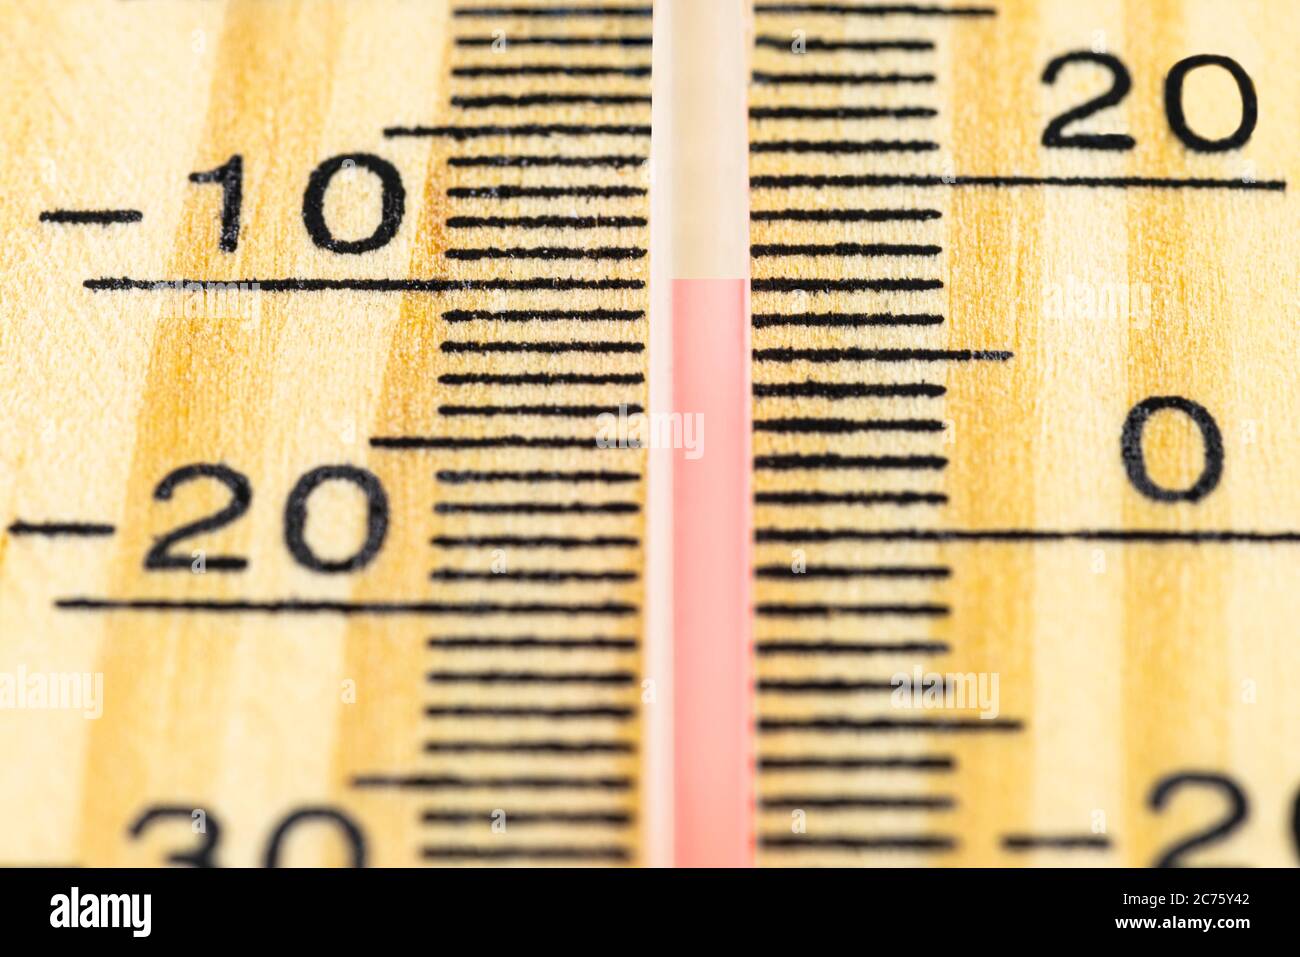 Un macro-shot di un classico termometro in legno che mostra una temperatura di -10 gradi Celsius, 14 gradi Fahrenheit. Foto Stock